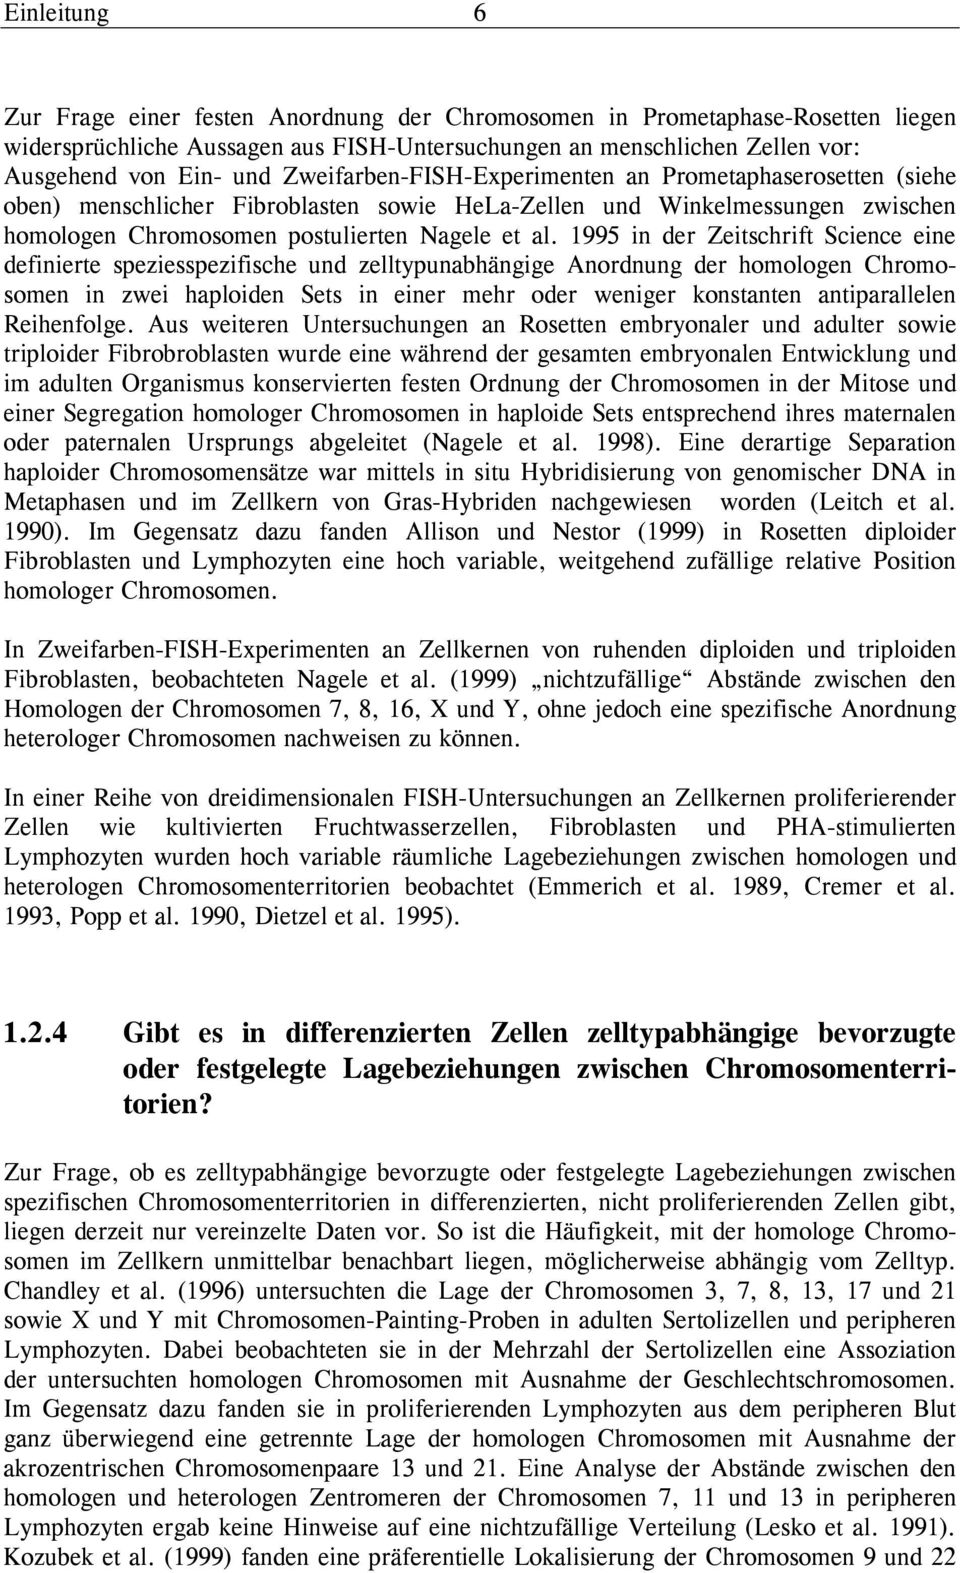 1995 in der Zeitschrift Science eine definierte speziesspezifische und zelltypunabhängige Anordnung der homologen Chromosomen in zwei haploiden Sets in einer mehr oder weniger konstanten